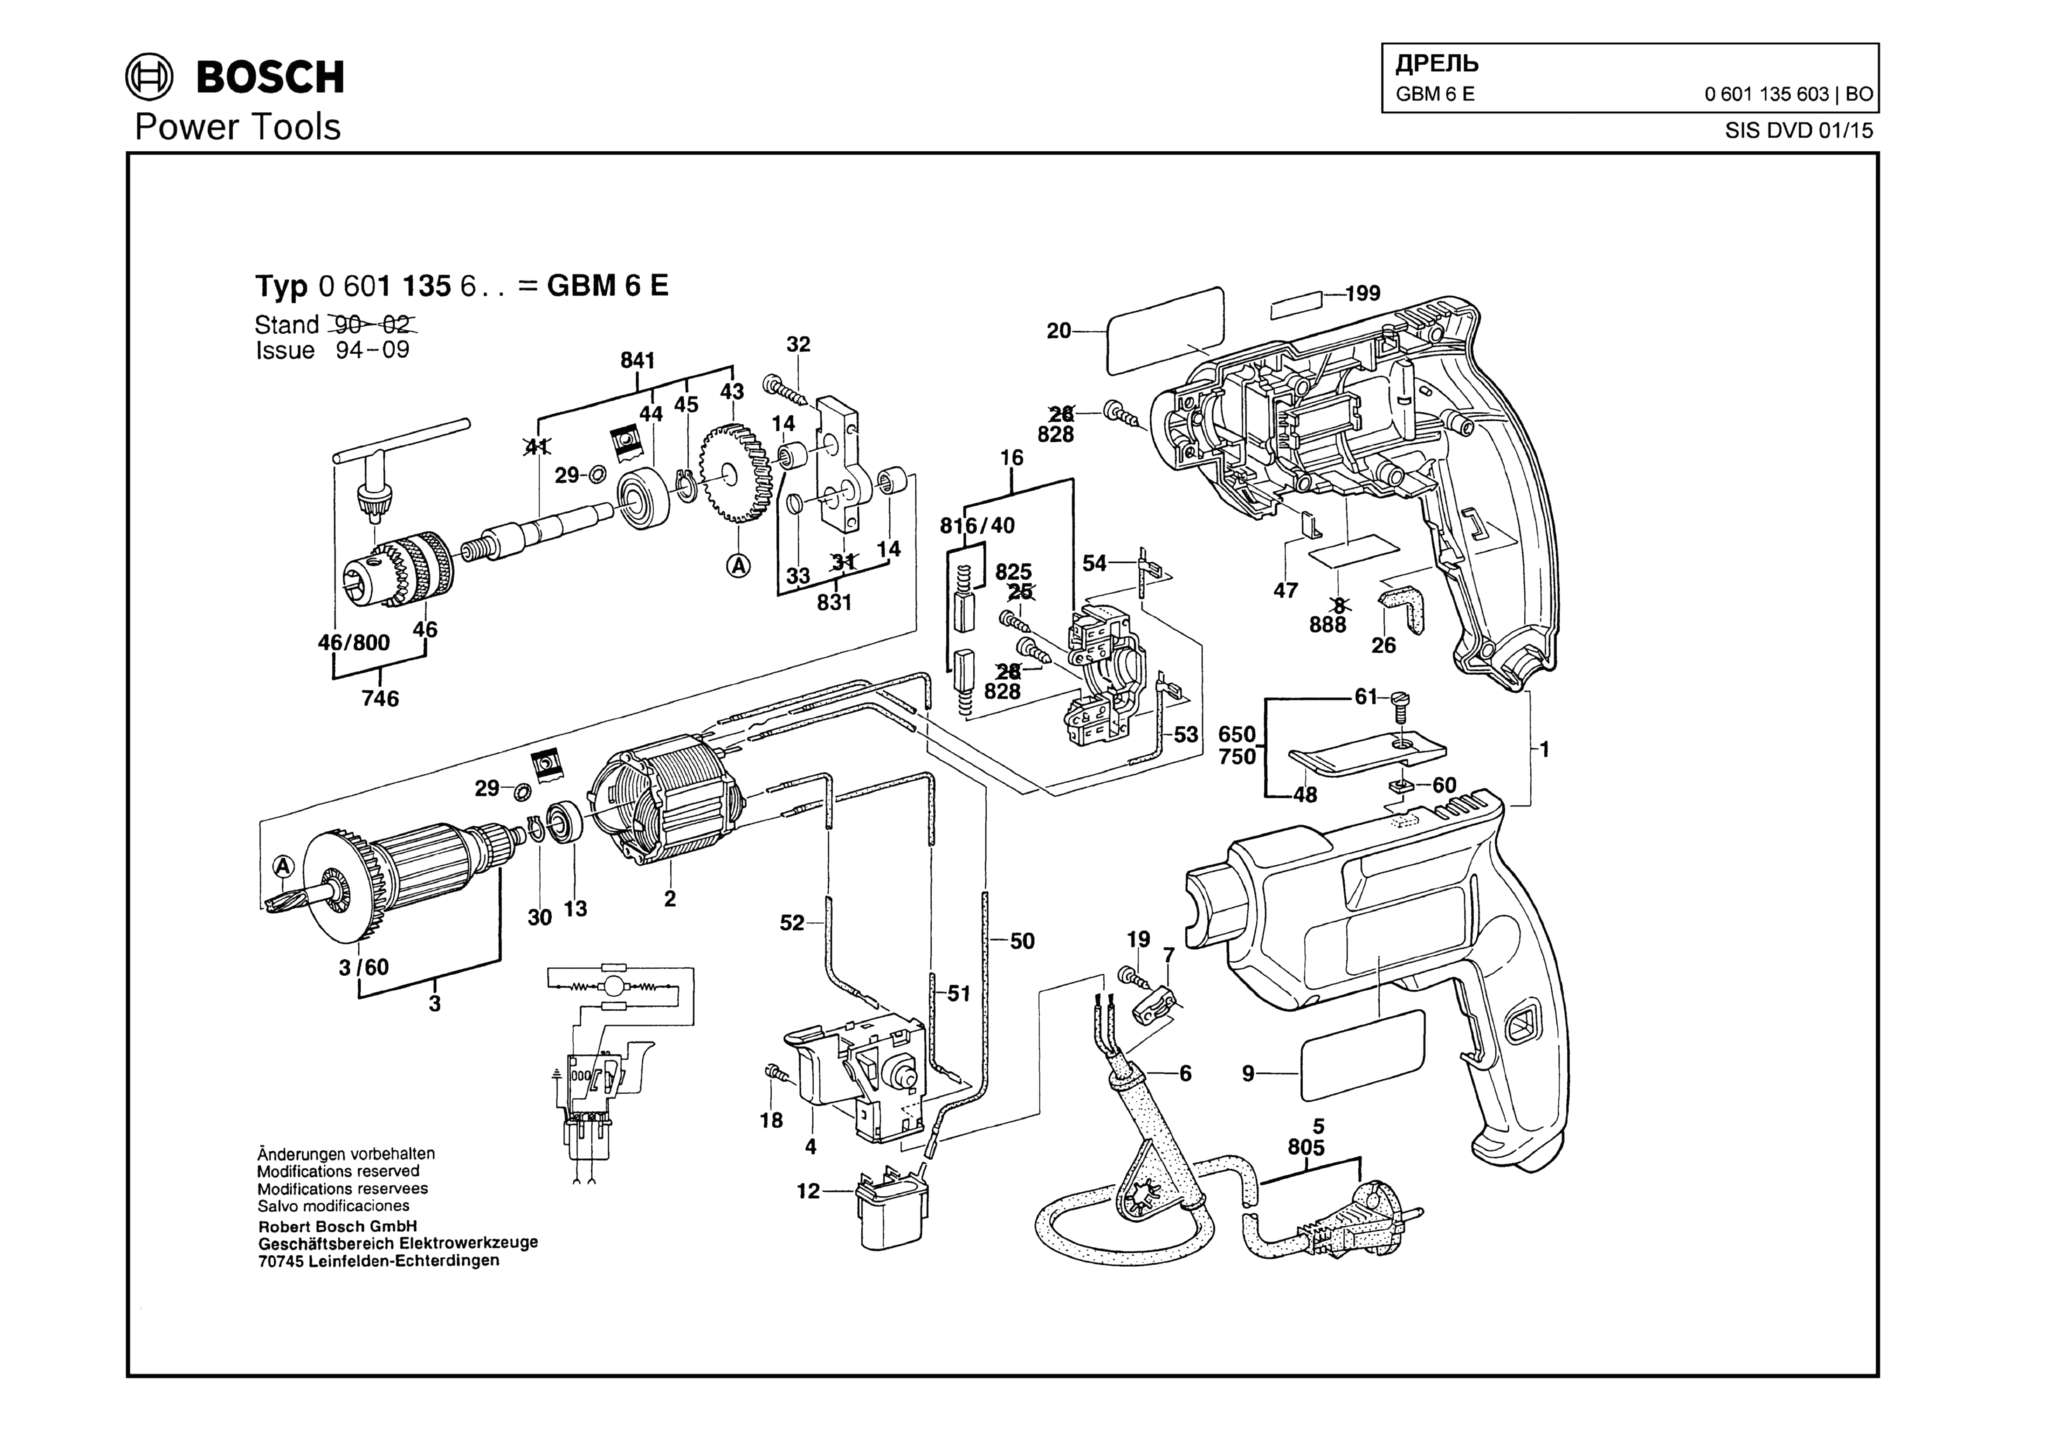 Запчасти, схема и деталировка Bosch GBM 6 E (ТИП 0601135603)